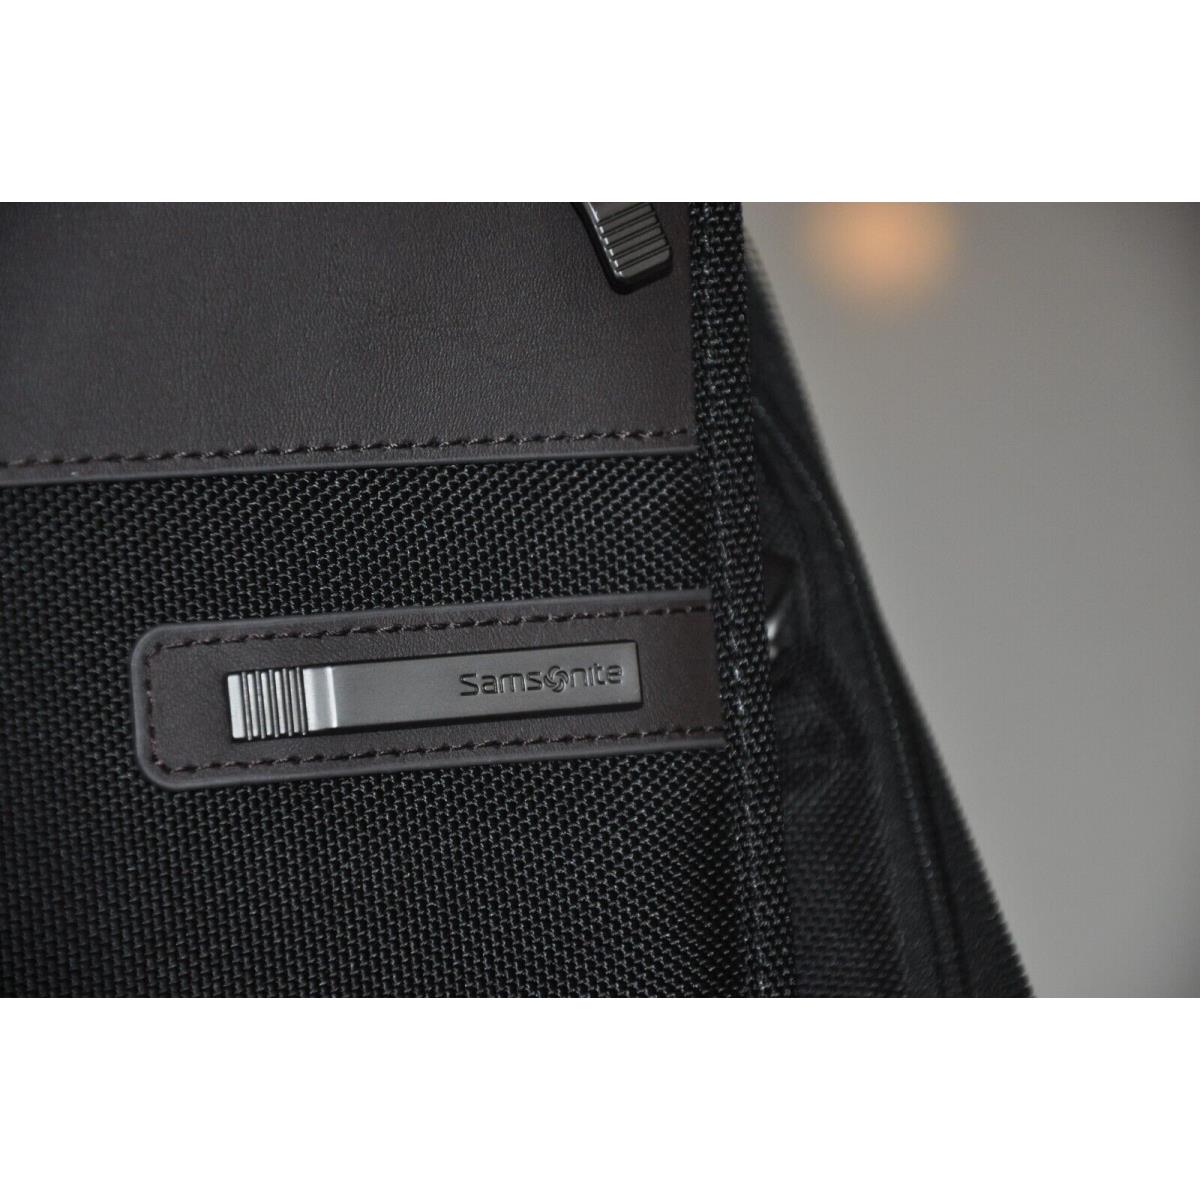 Black Samsonite Laptop Soft Nylon Messenger Briefcase 18 12 Shoulder Strap